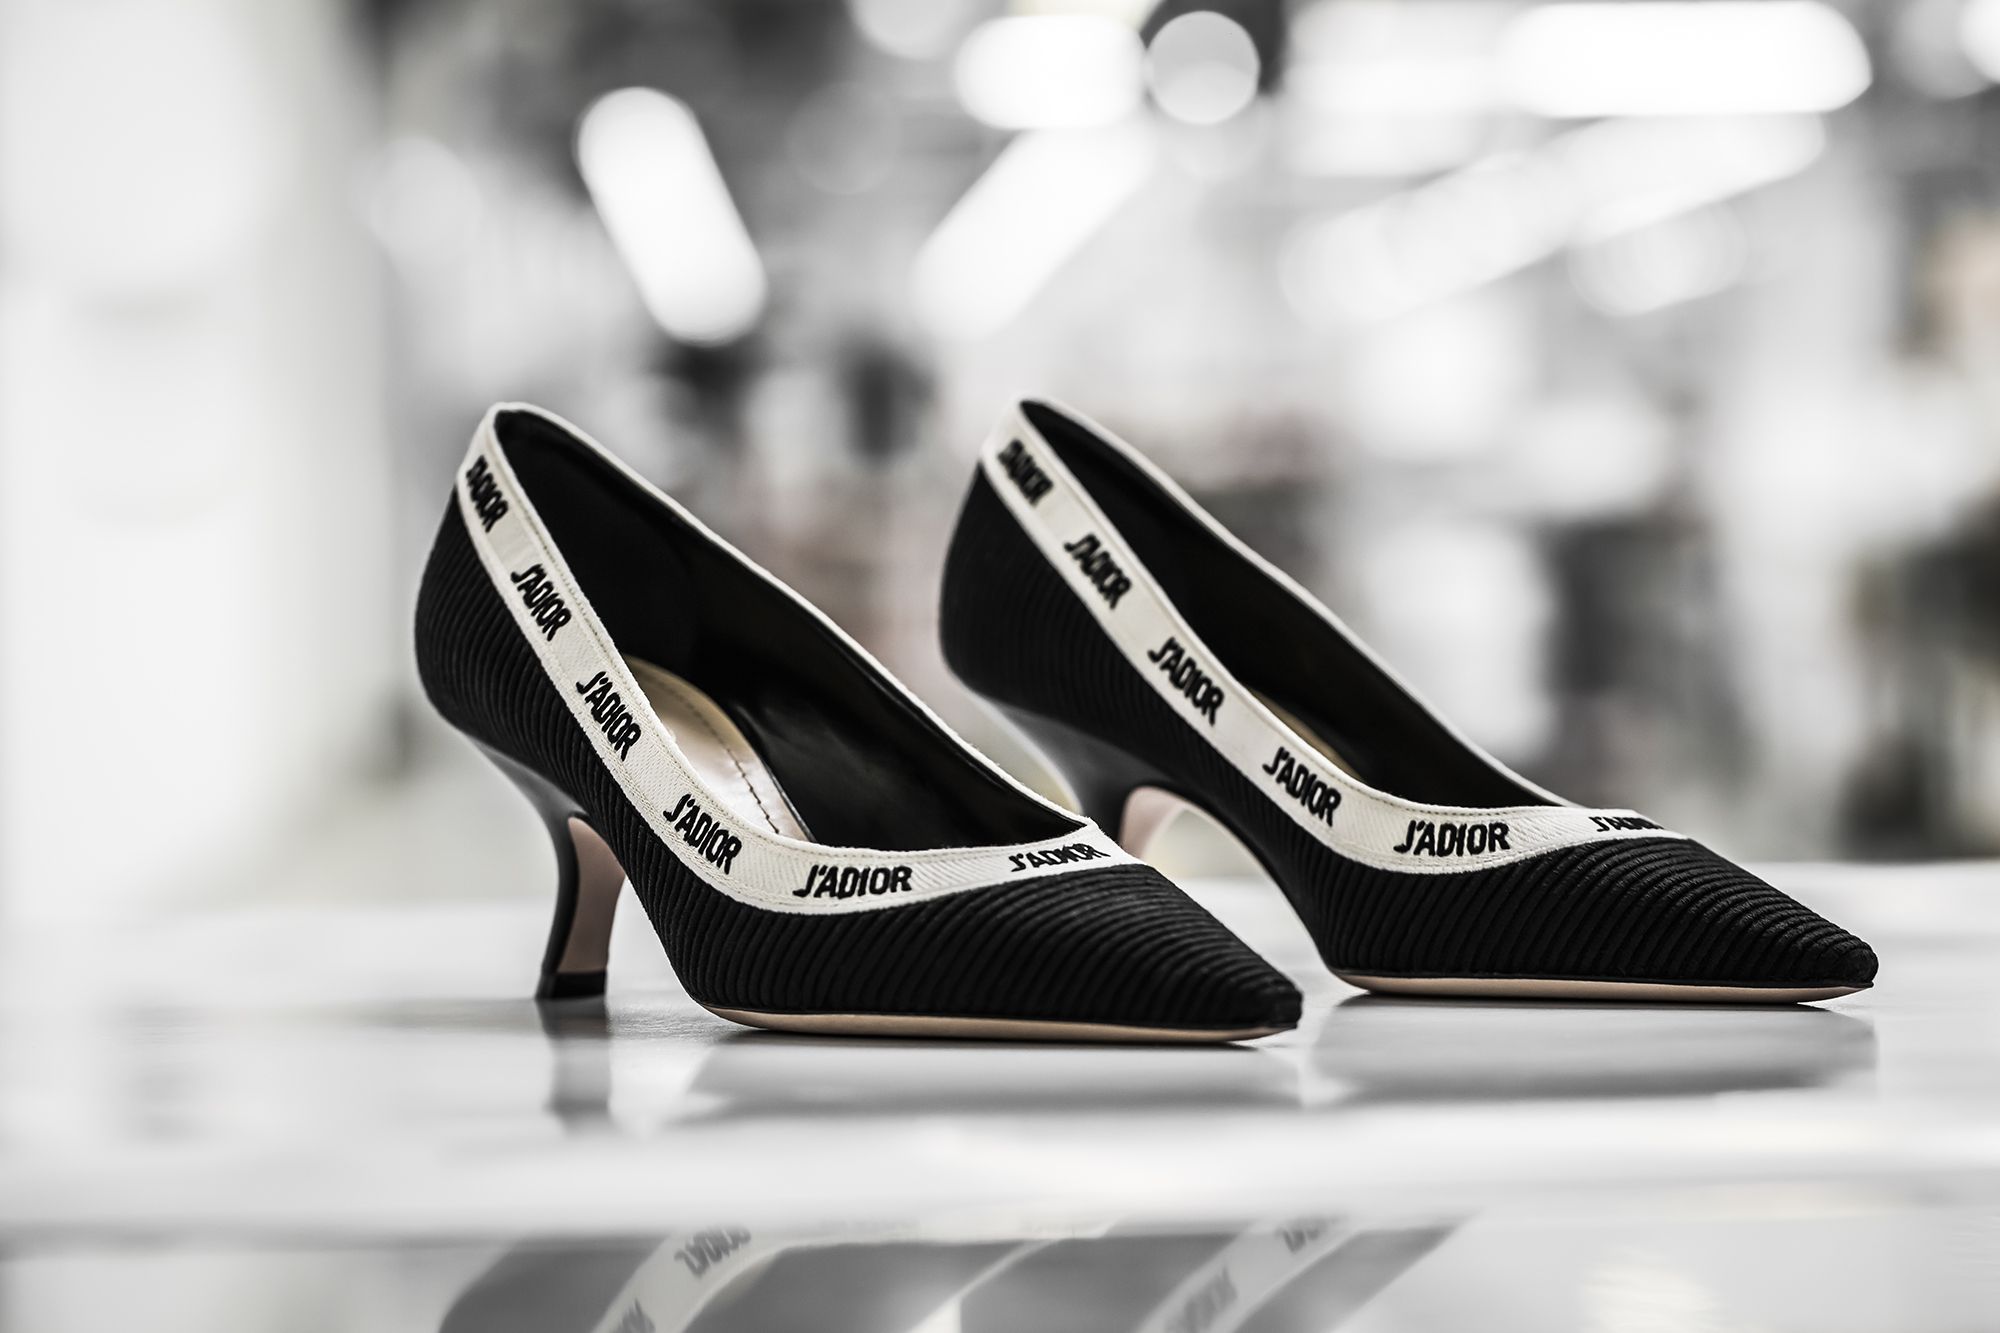 su zapato para el verano 2019 y promete convertirse en el rey del 'street style'- El nuevo zapato J'Adior de Dior